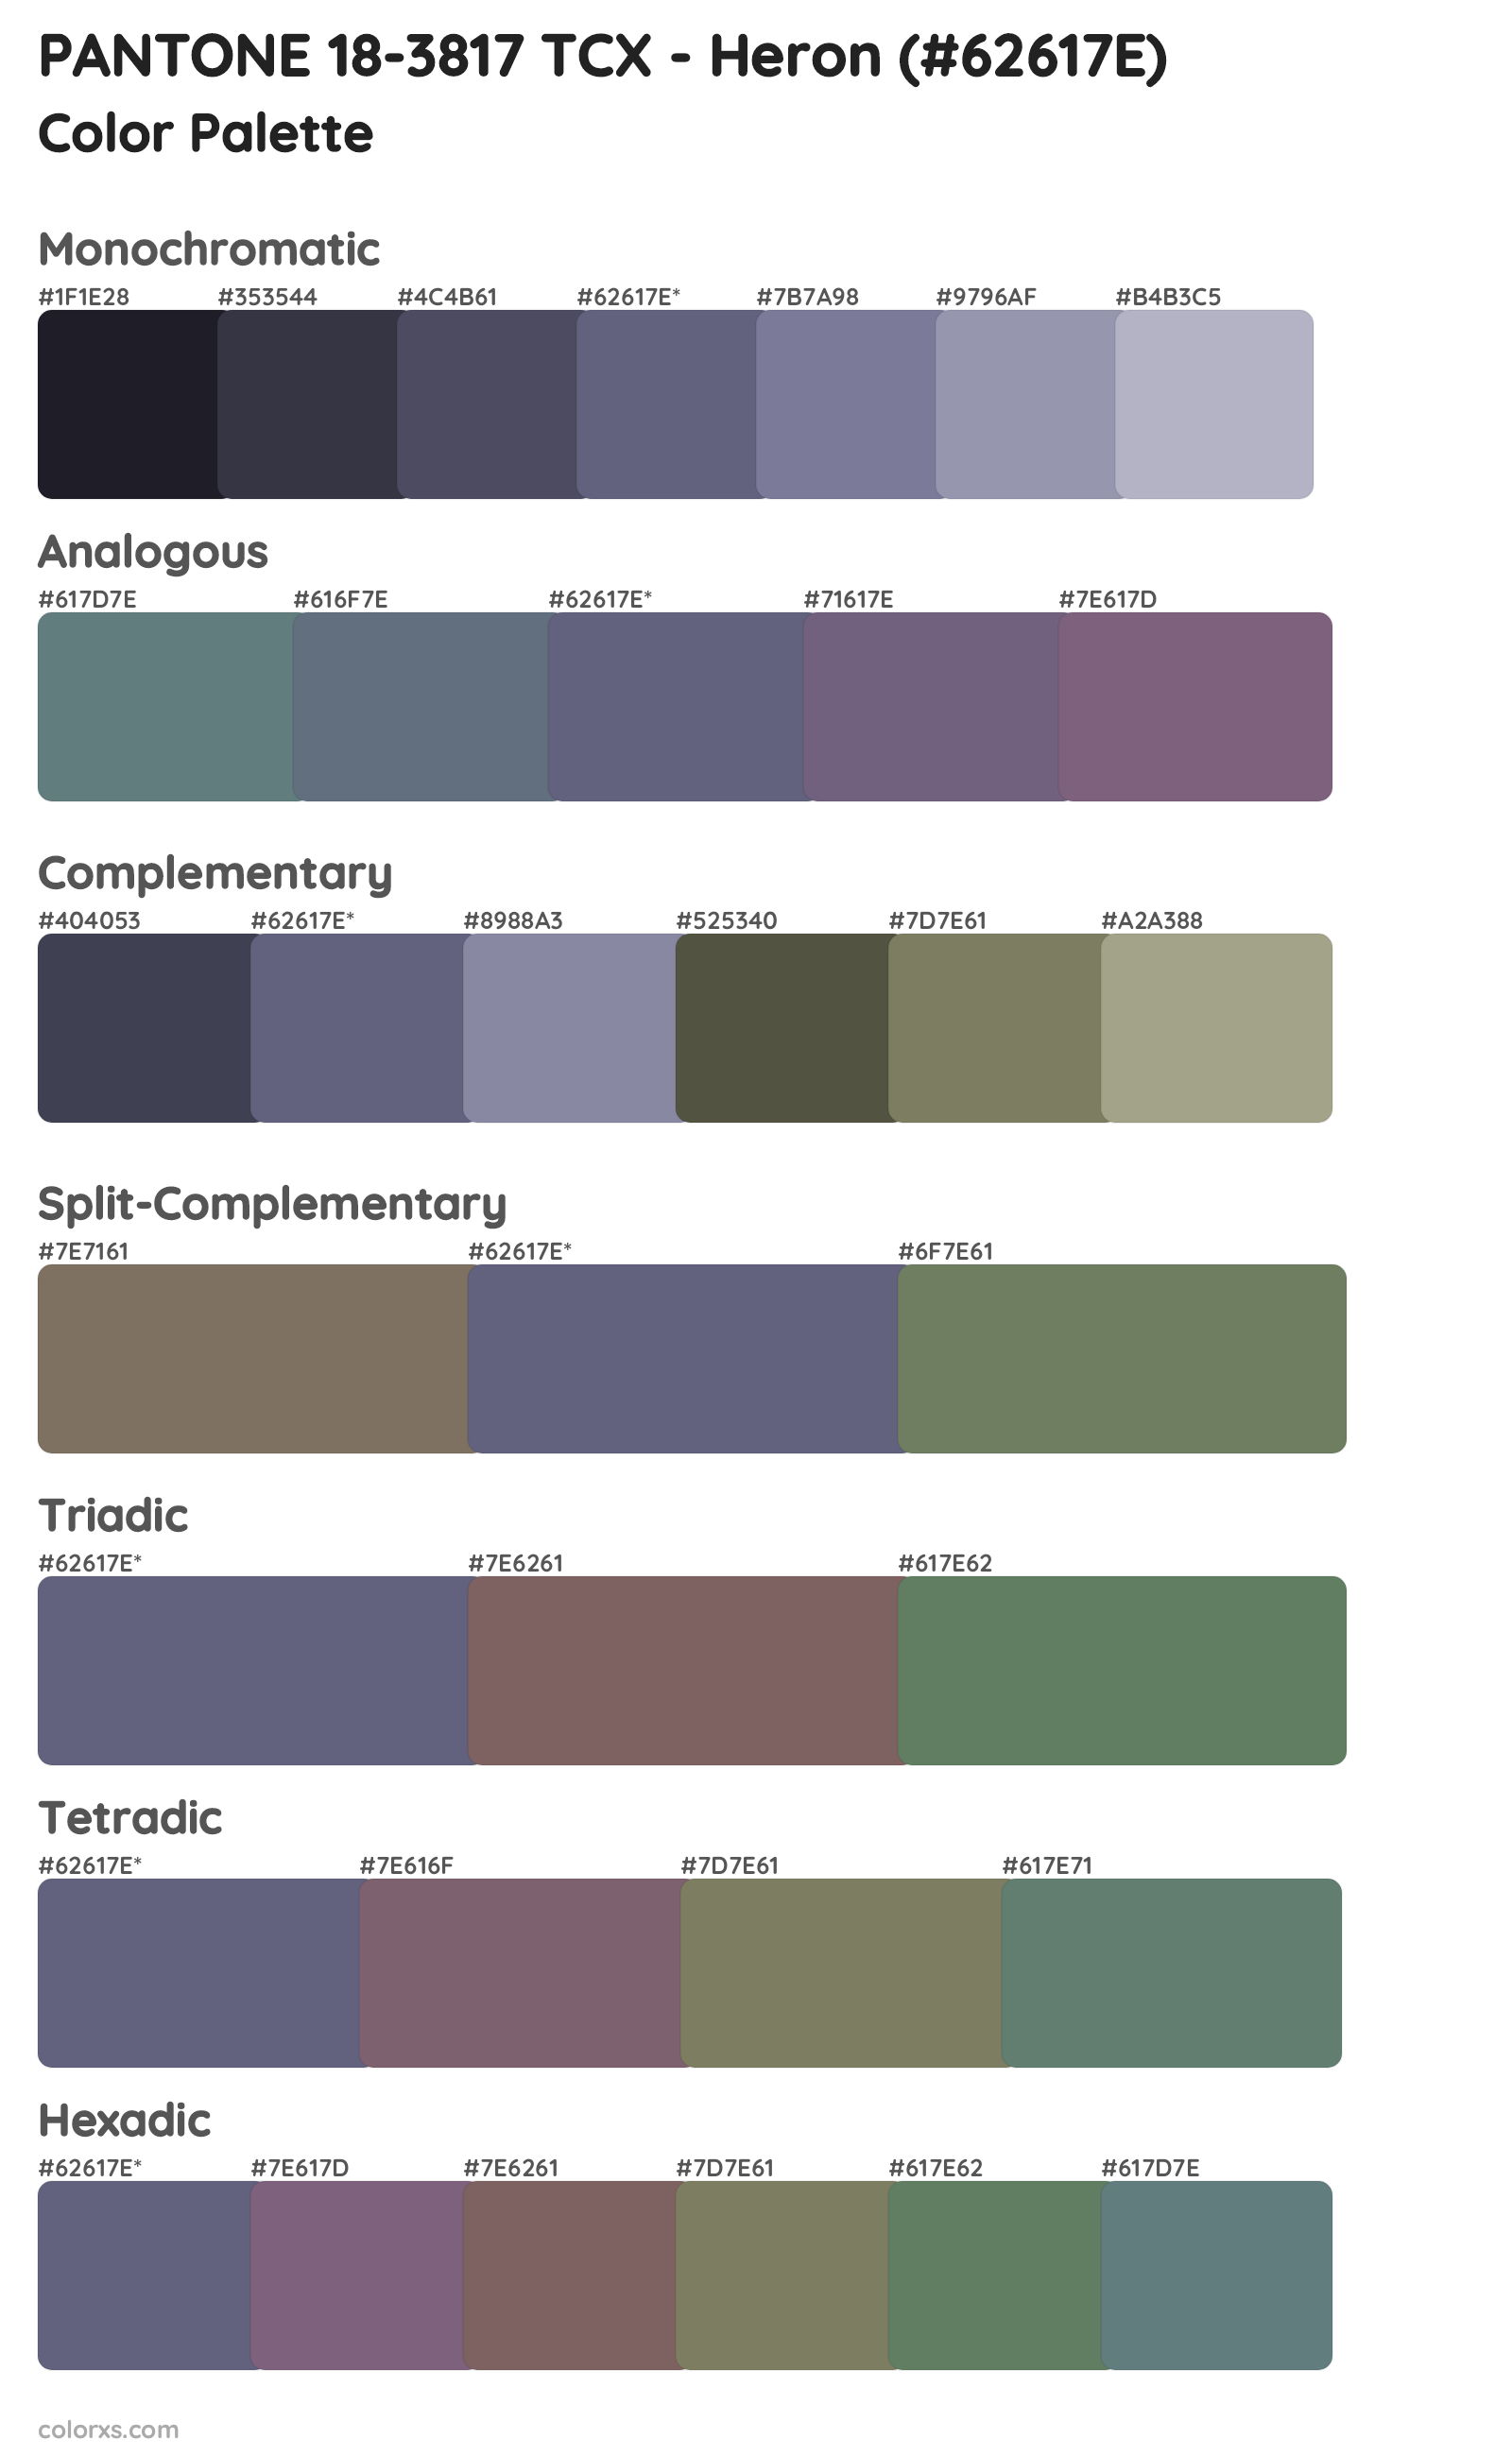 PANTONE 18-3817 TCX - Heron Color Scheme Palettes